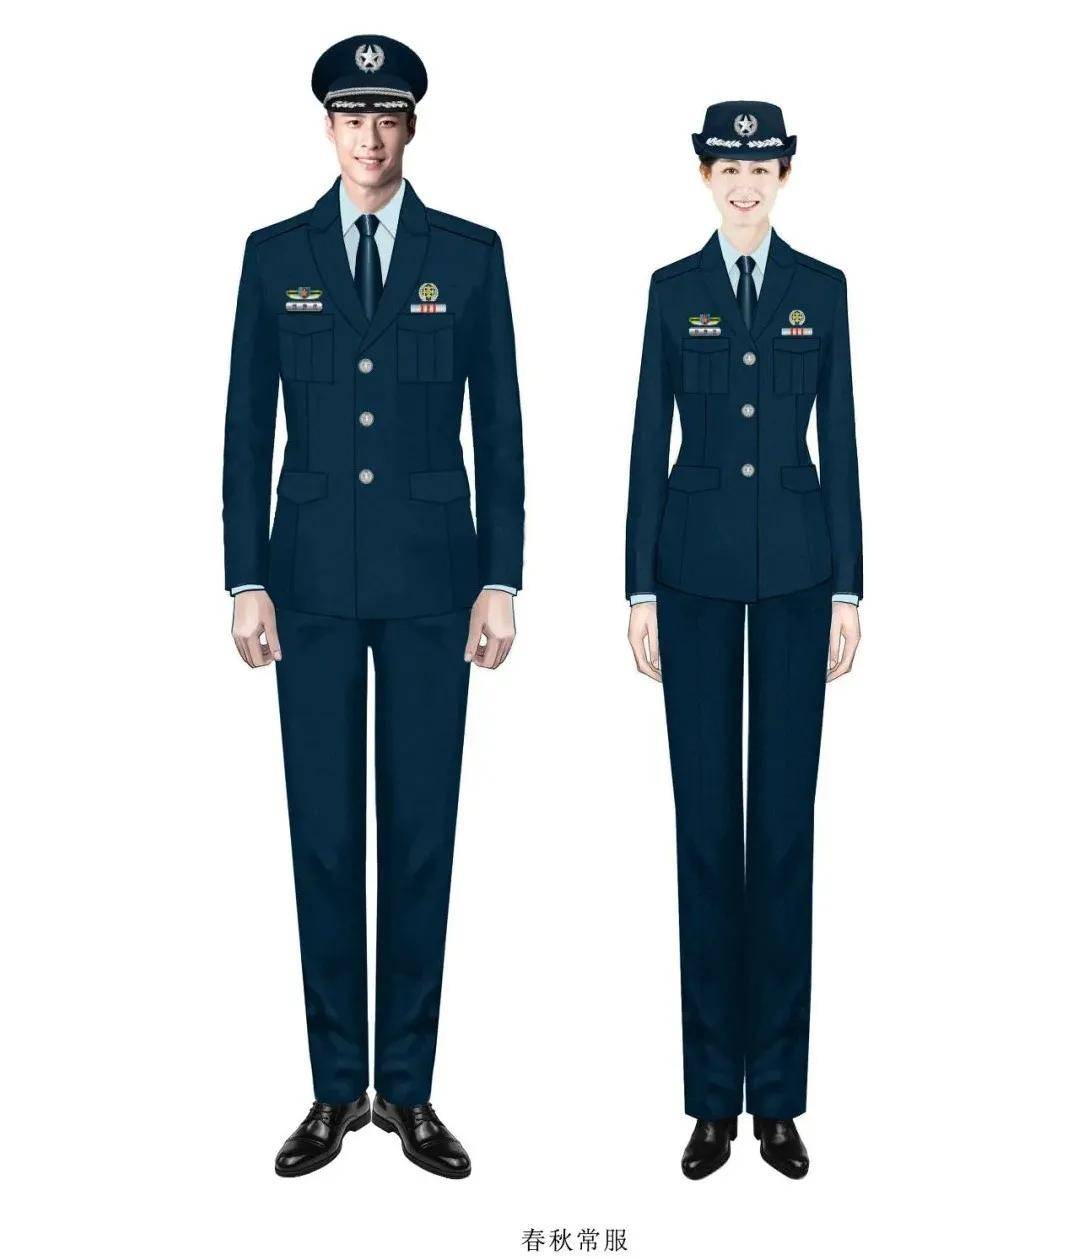 新时代军队文职人员制服和标志,最炫"孔雀蓝"你想拥有